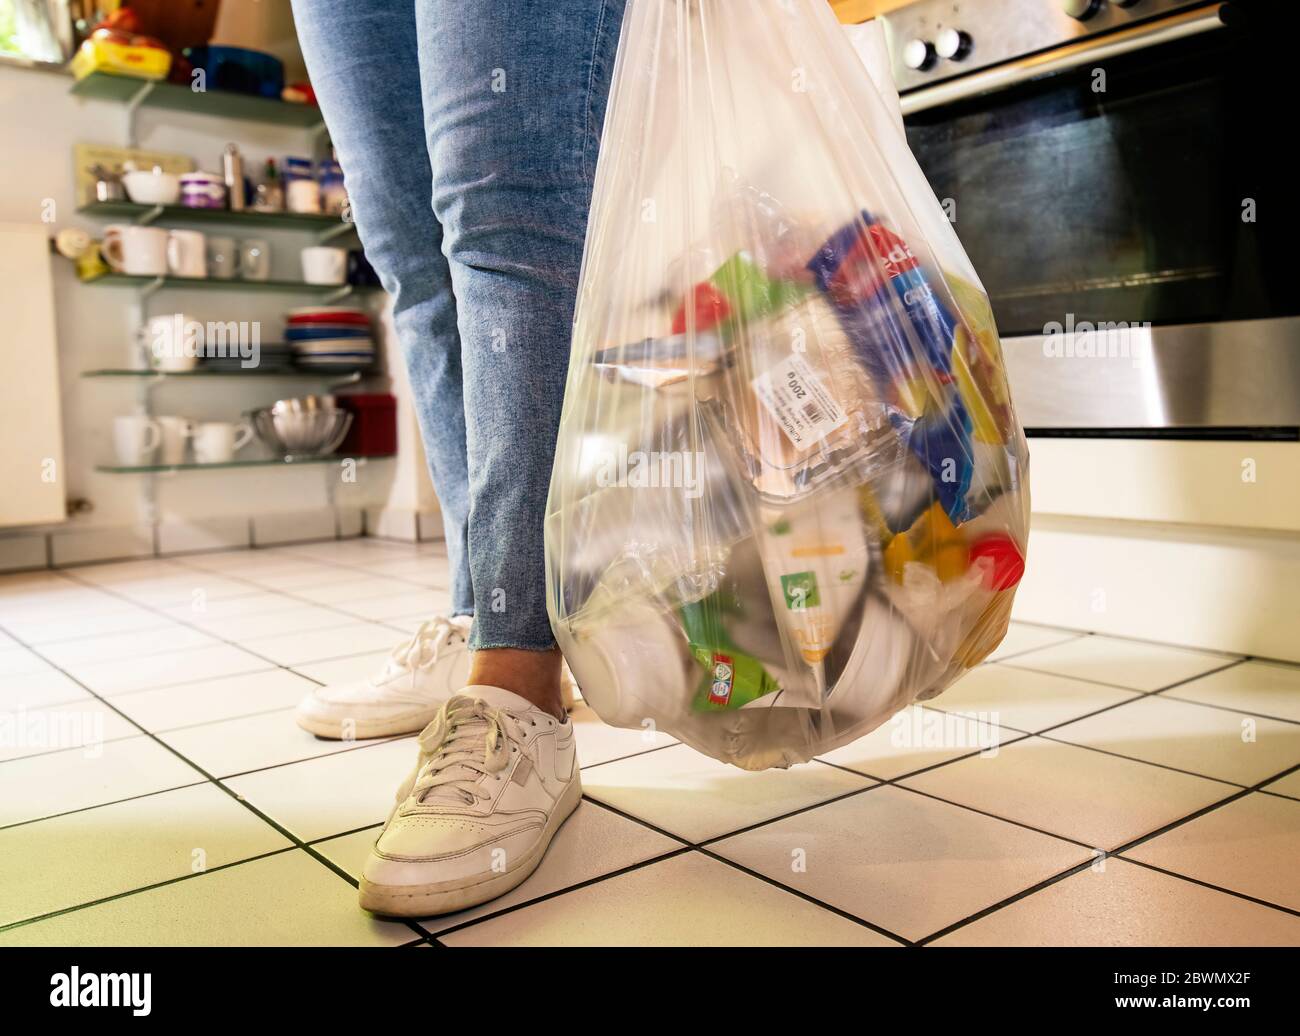 Mujer de pie en una cocina con una bolsa de plástico con residuos de plástico Foto de stock